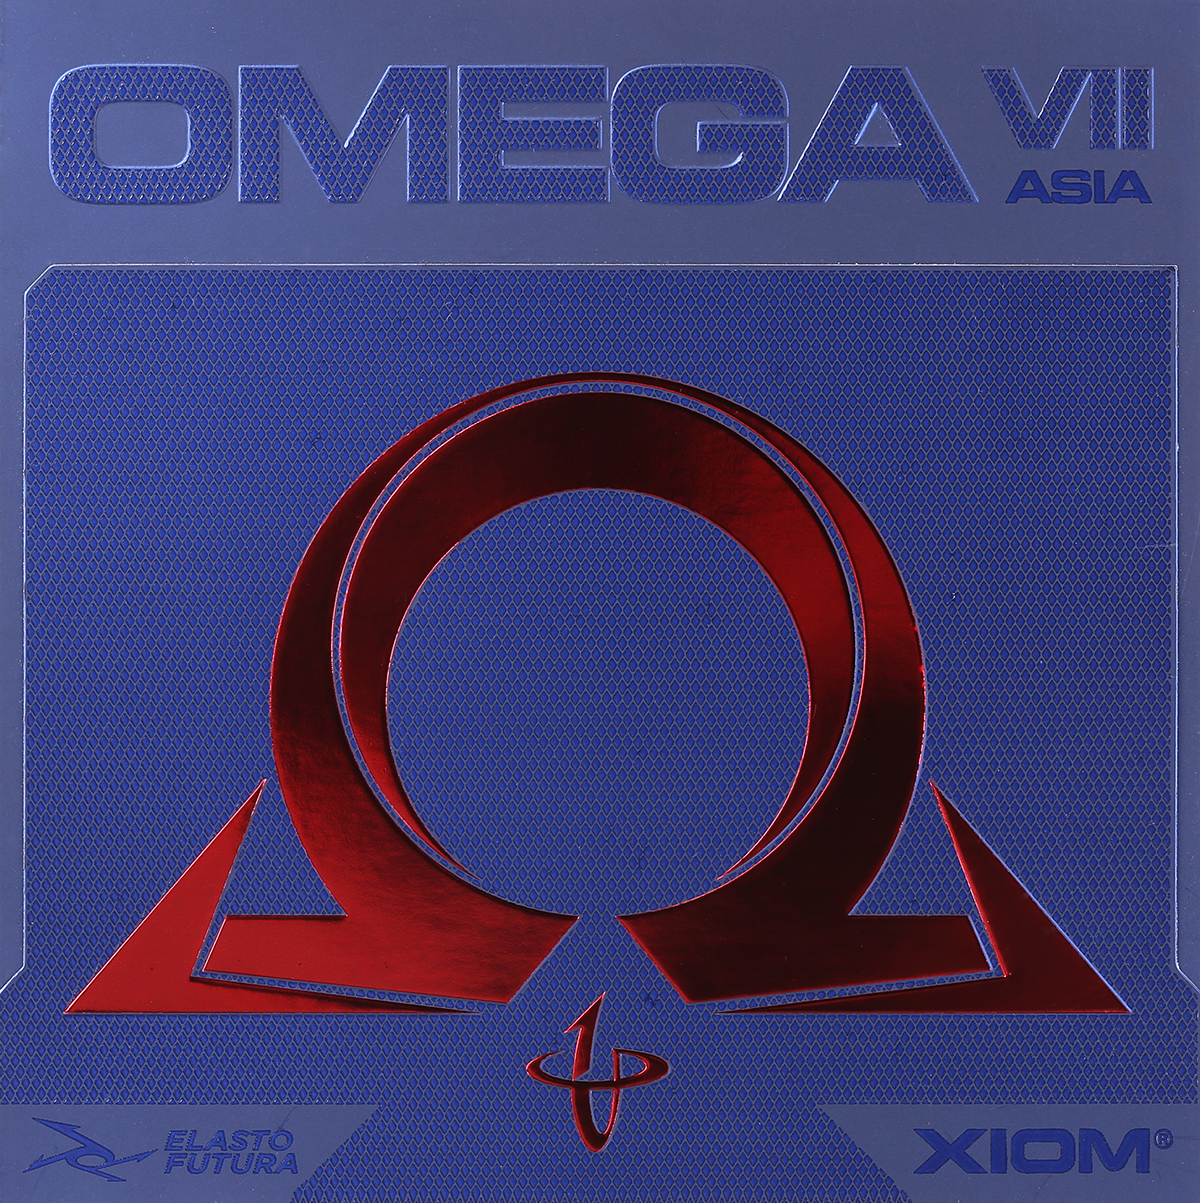 XIOM Omega 7 Asia - do třetice všeho dobrého!